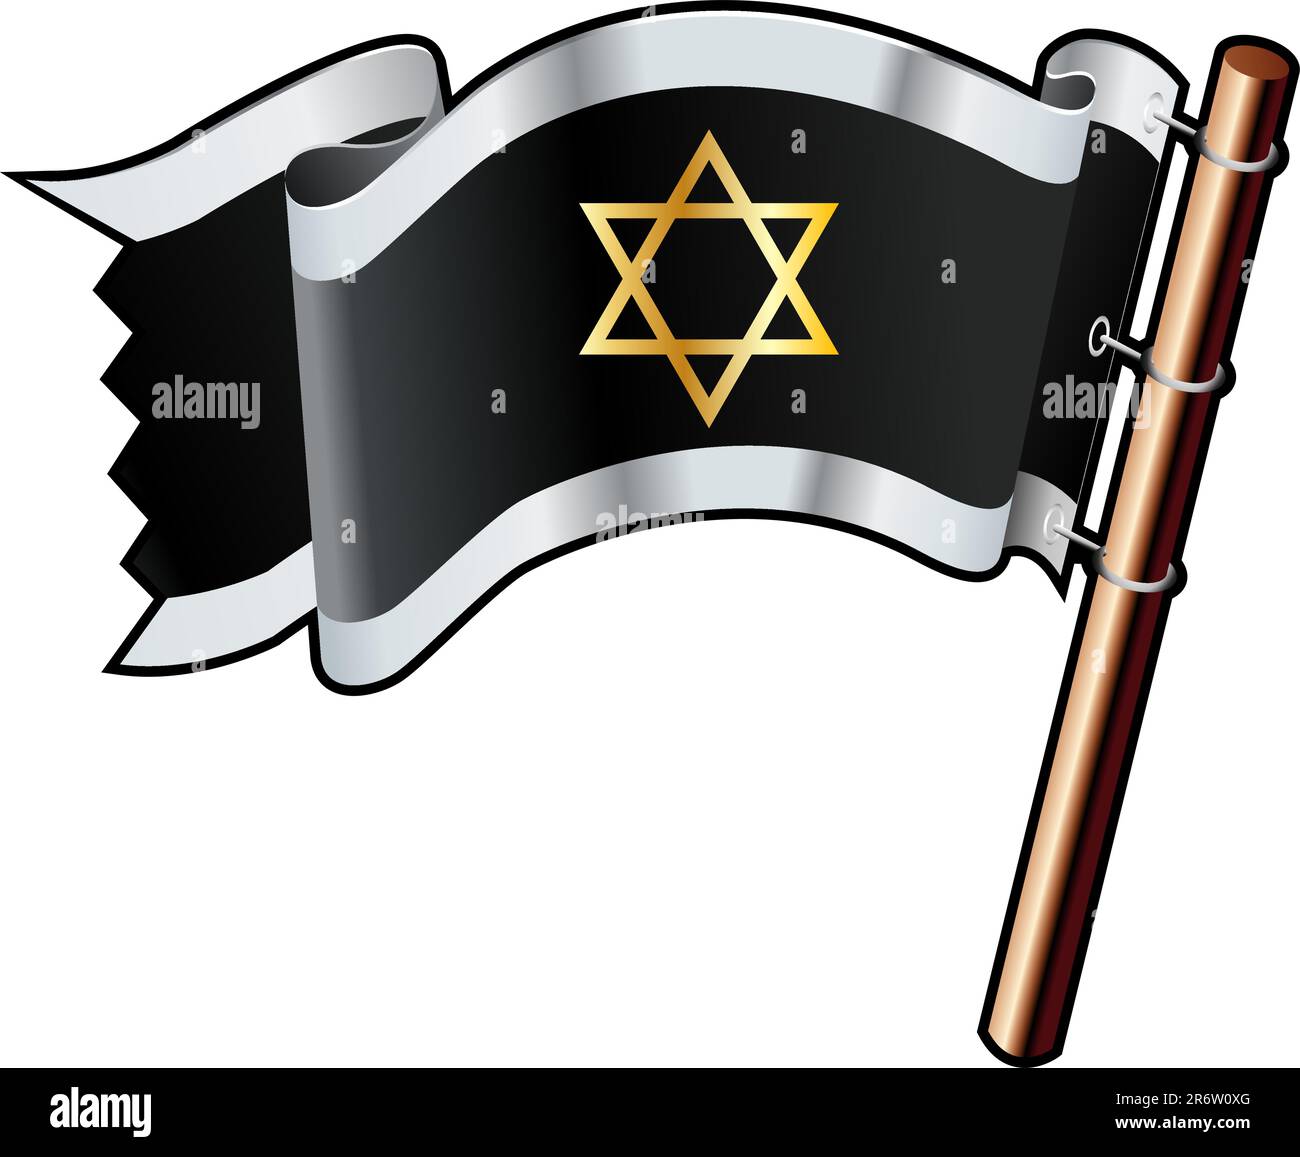 Der Stern des jüdischen religiösen Symbols von David auf schwarzer, silberner und goldener Vektorflagge, die auf Websites, in gedruckter Form oder auf Werbematerial verwendet werden kann Stock Vektor